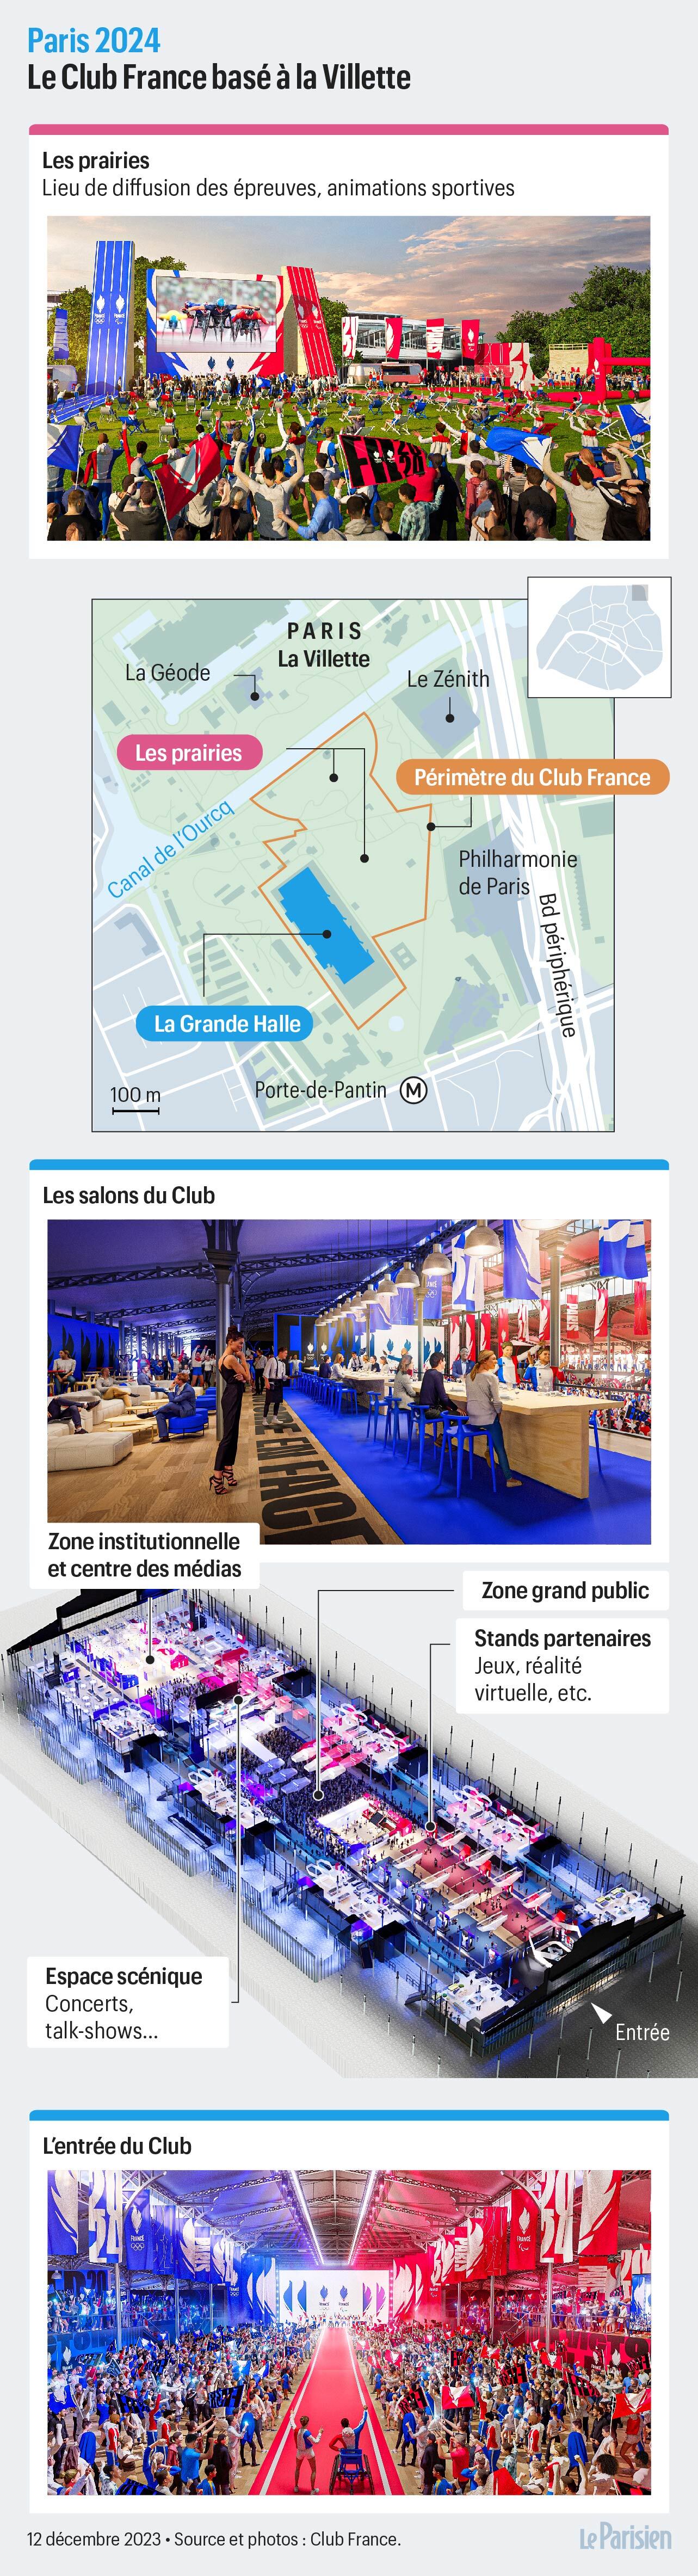 Le Club Paris 2024 lance son calendrier pour aller de l'Avant ! - Newsroom  Paris 2024